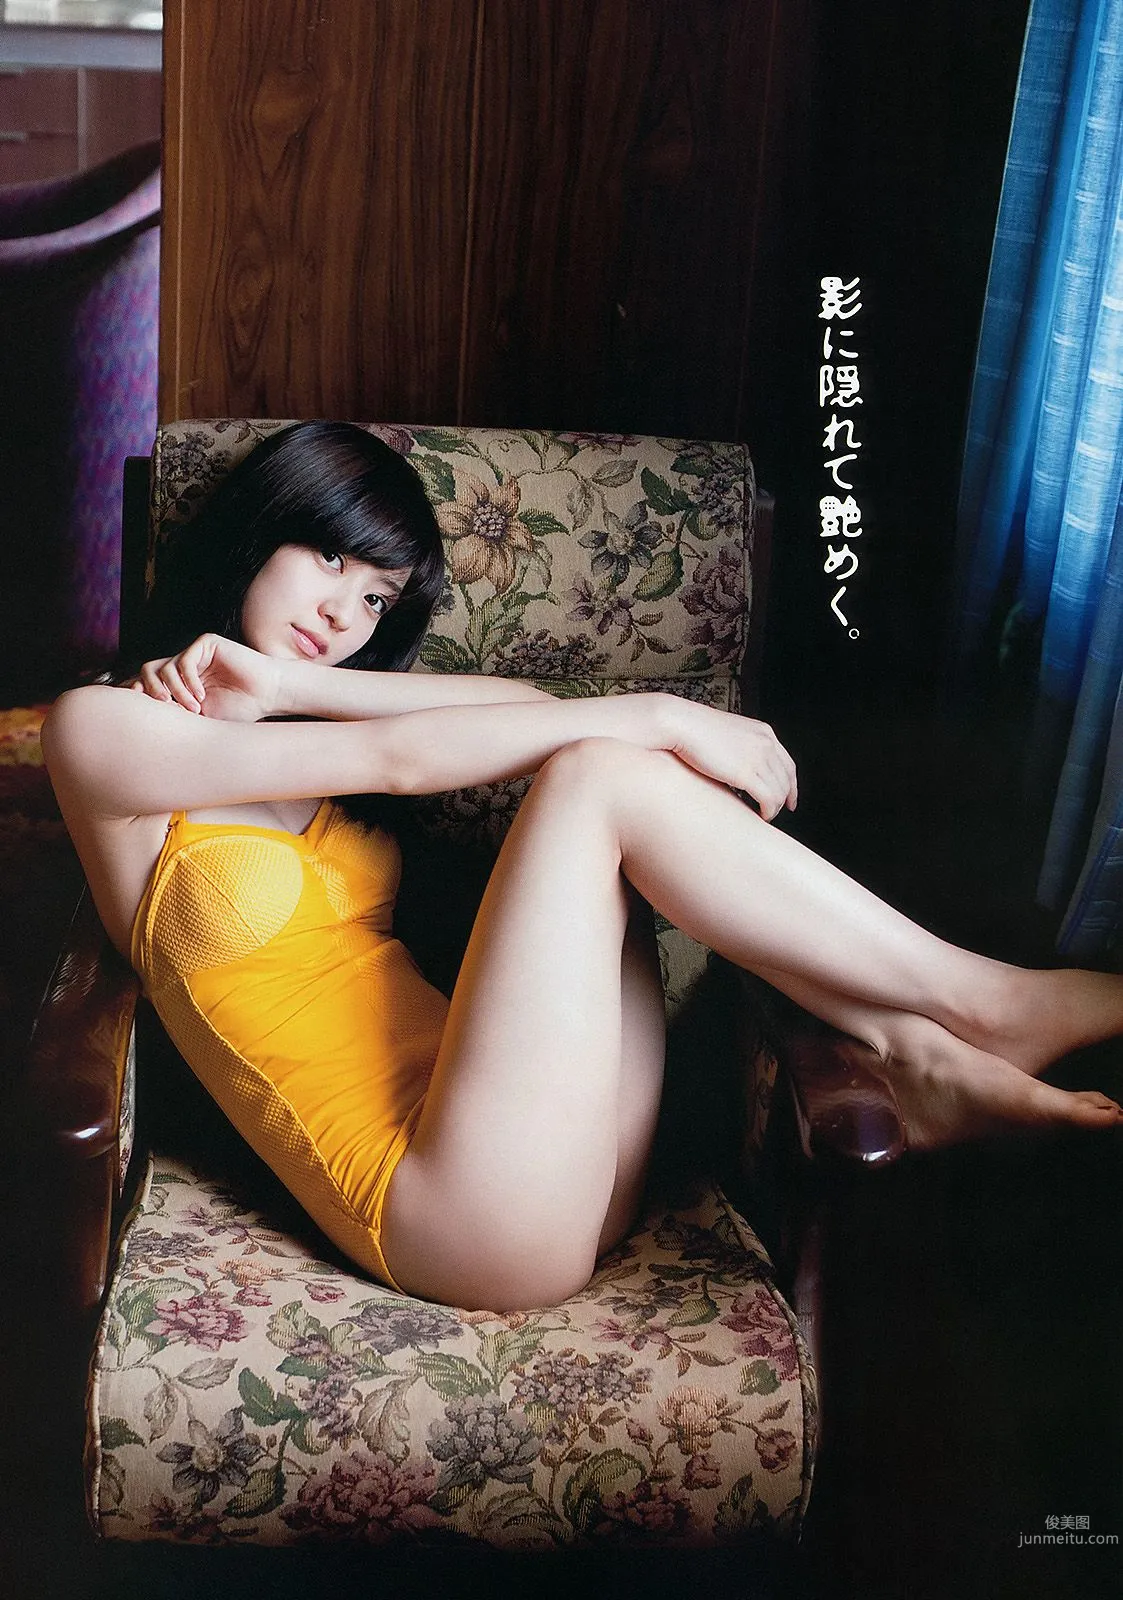 逢沢りな 中村静香 藤原令子 光宗薫 [Weekly Playboy] 2012年No.17 写真杂志4